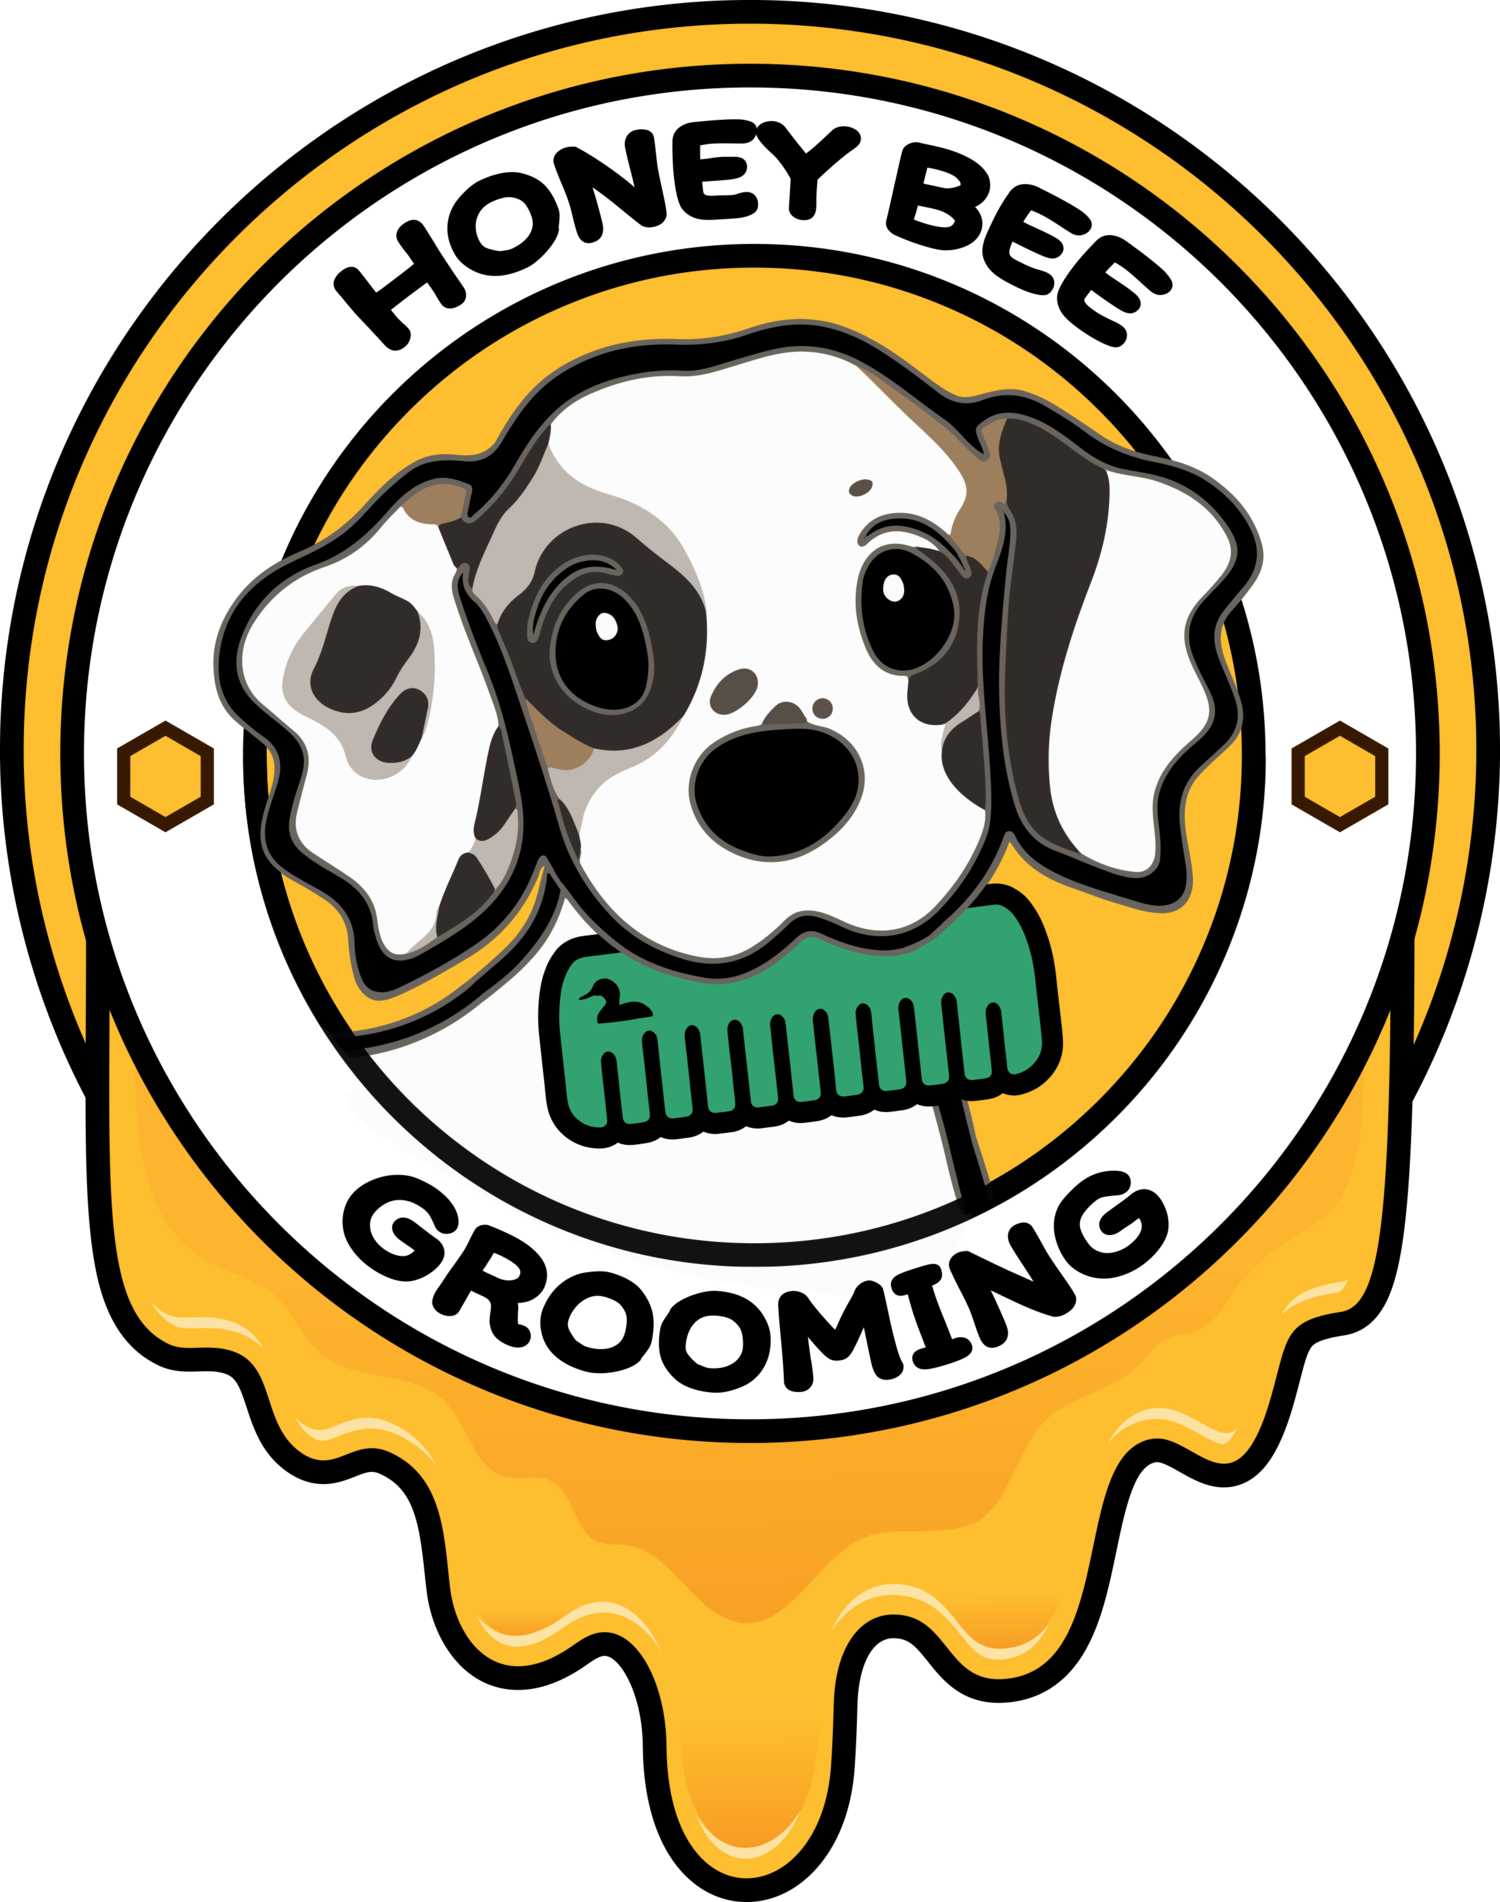 Honey Bee Grooming